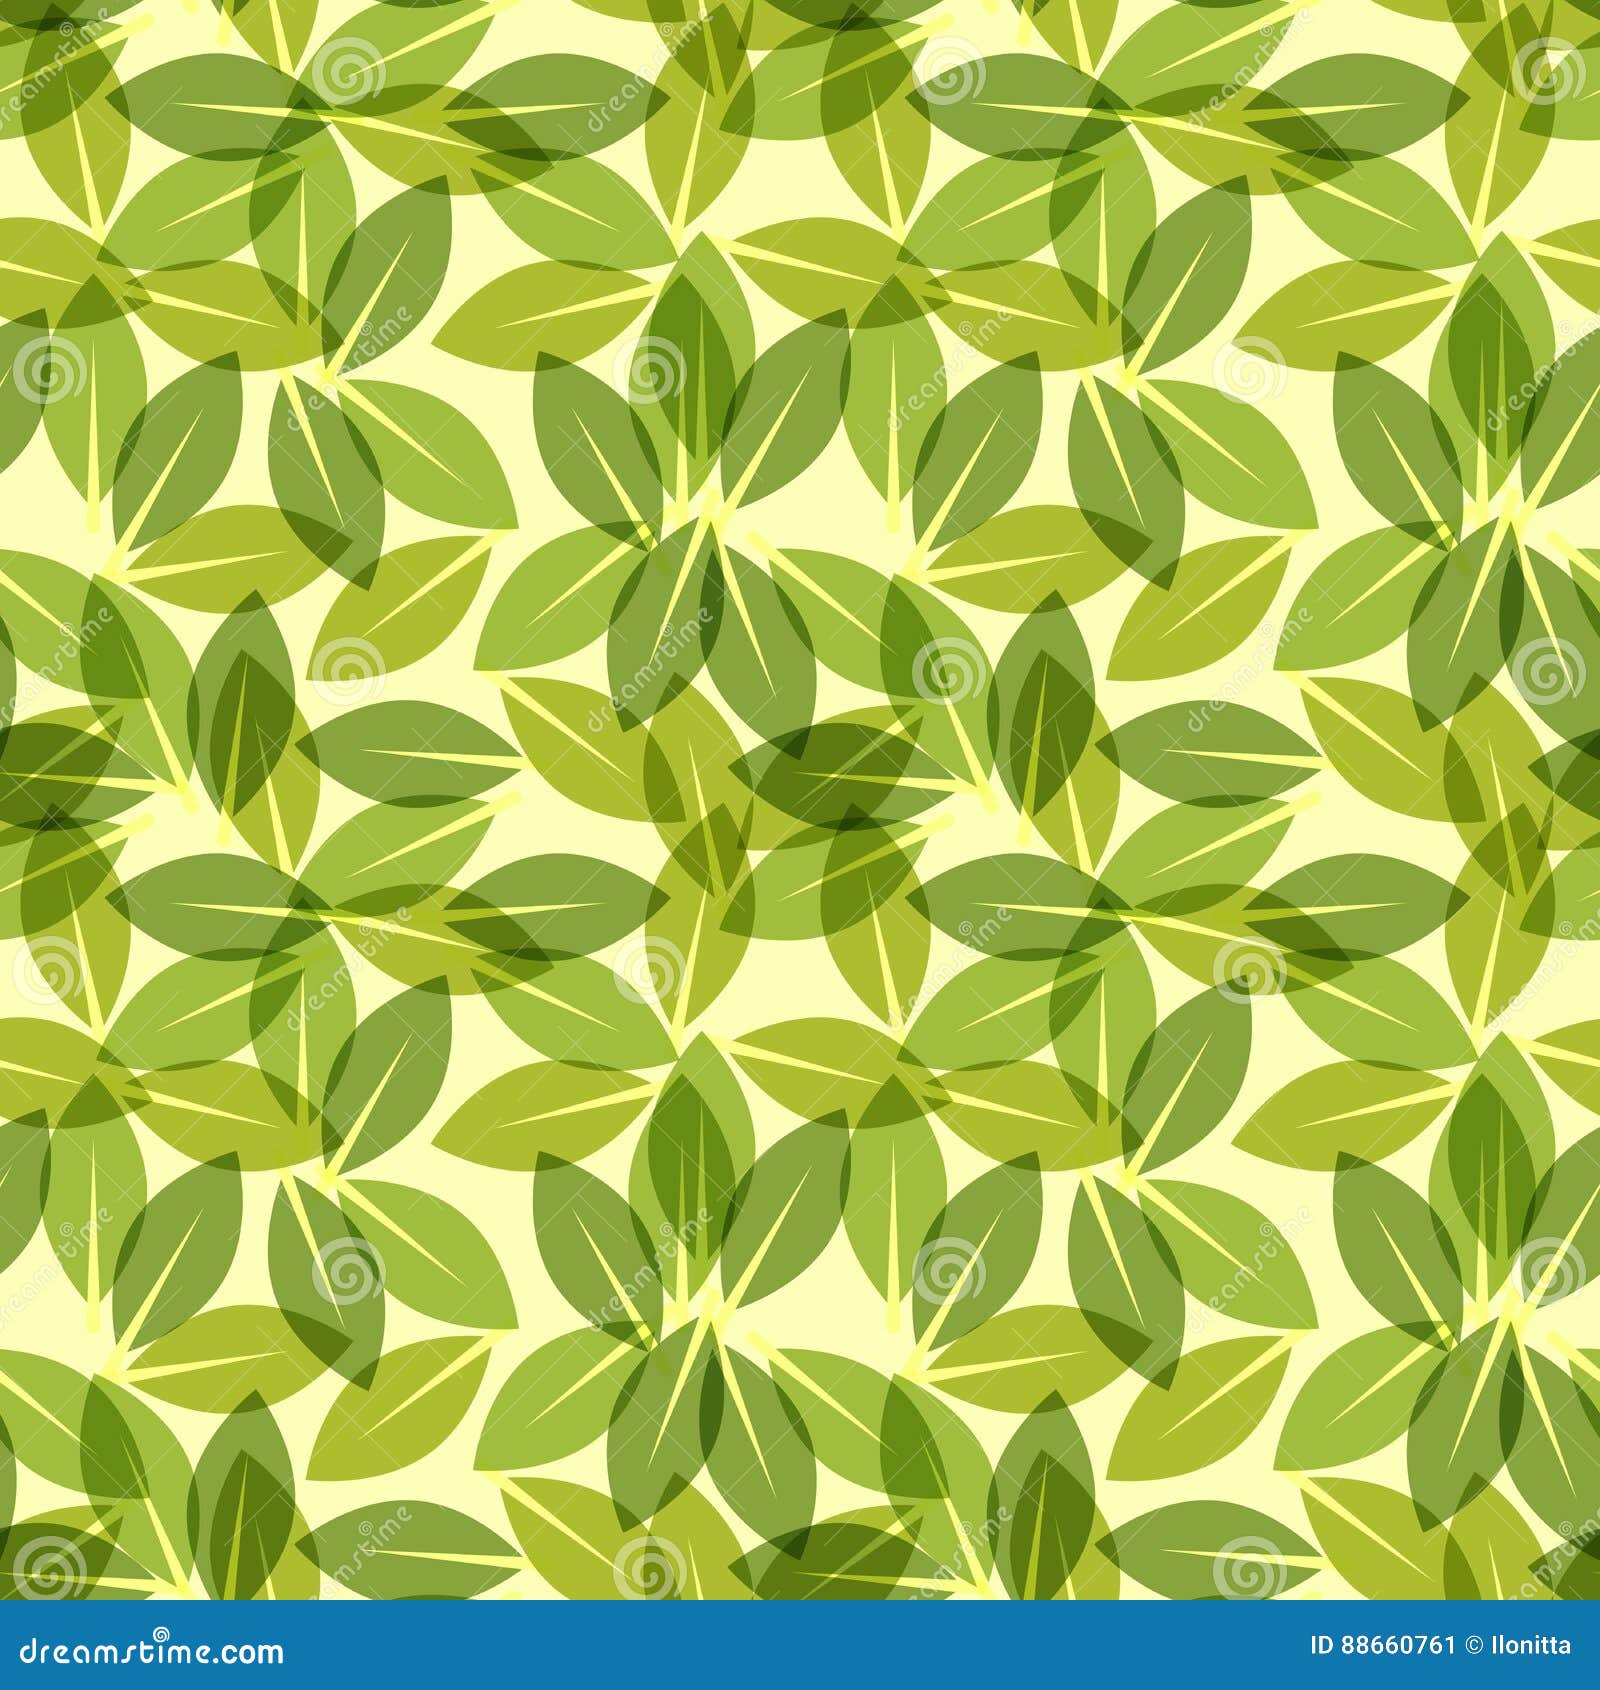 Green Leaf Spring Wallpaper, Elegant Fresh Foliage or Greenery, Vector